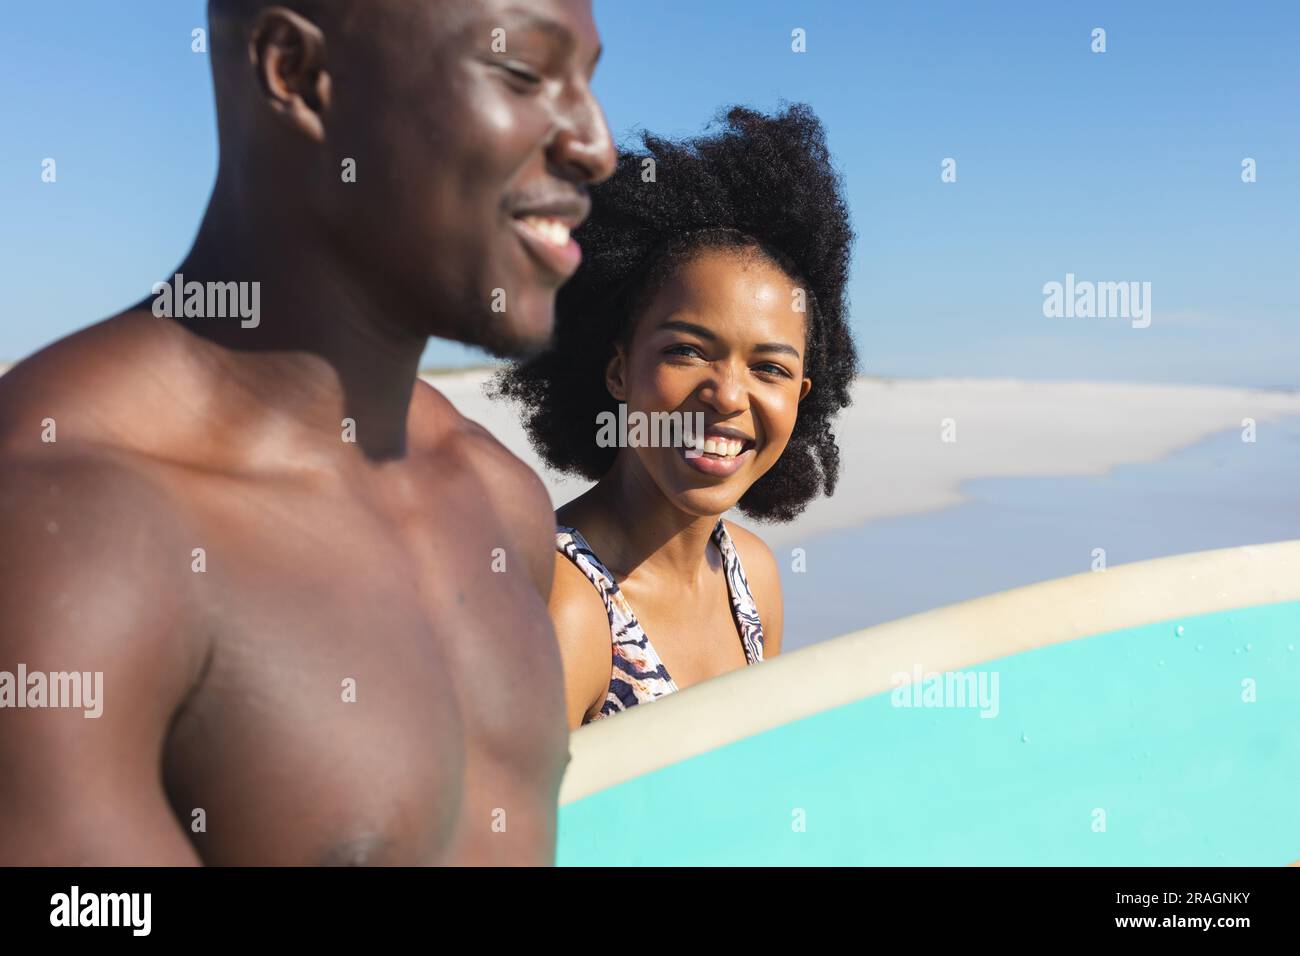 Coppia afroamericana felice e in forma che porta la tavola da surf sorridendo sulla spiaggia soleggiata in riva al mare Foto Stock